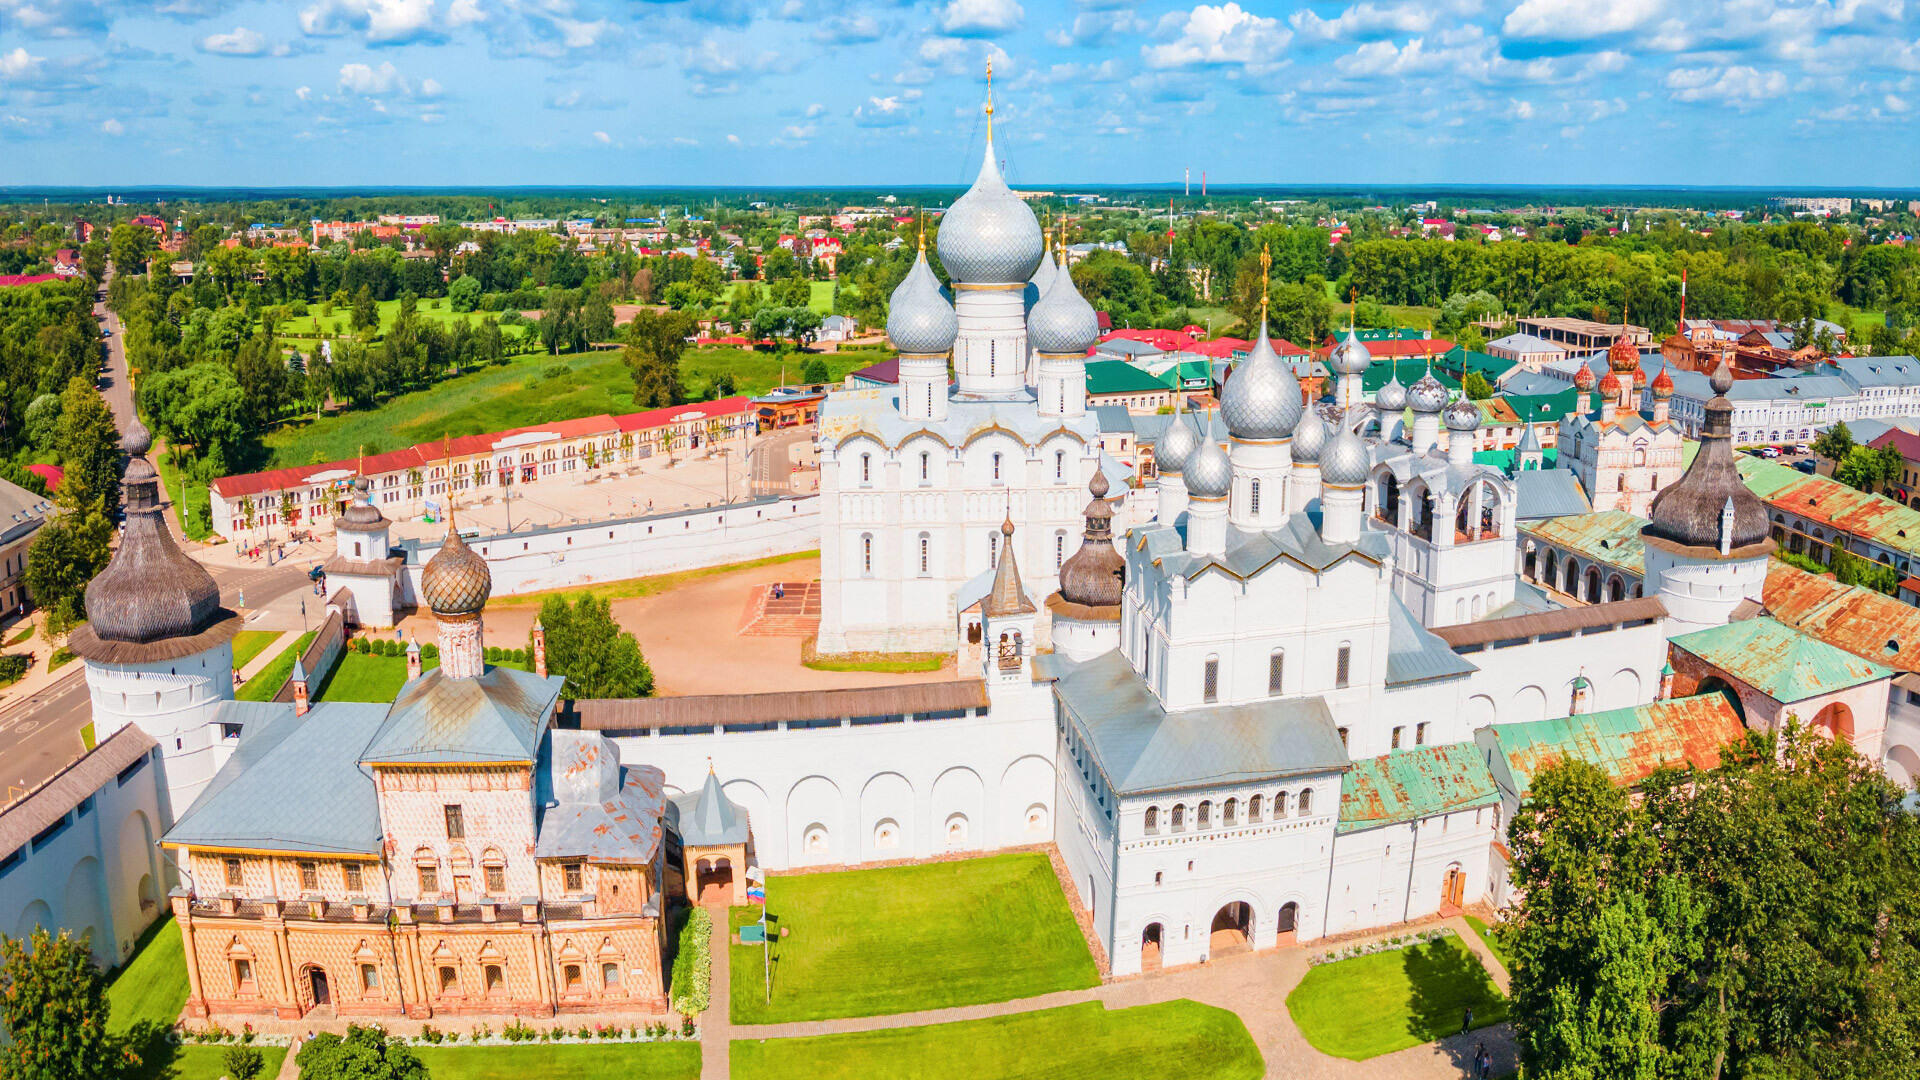 Katedral Kenaikan di Rostov Veliky.